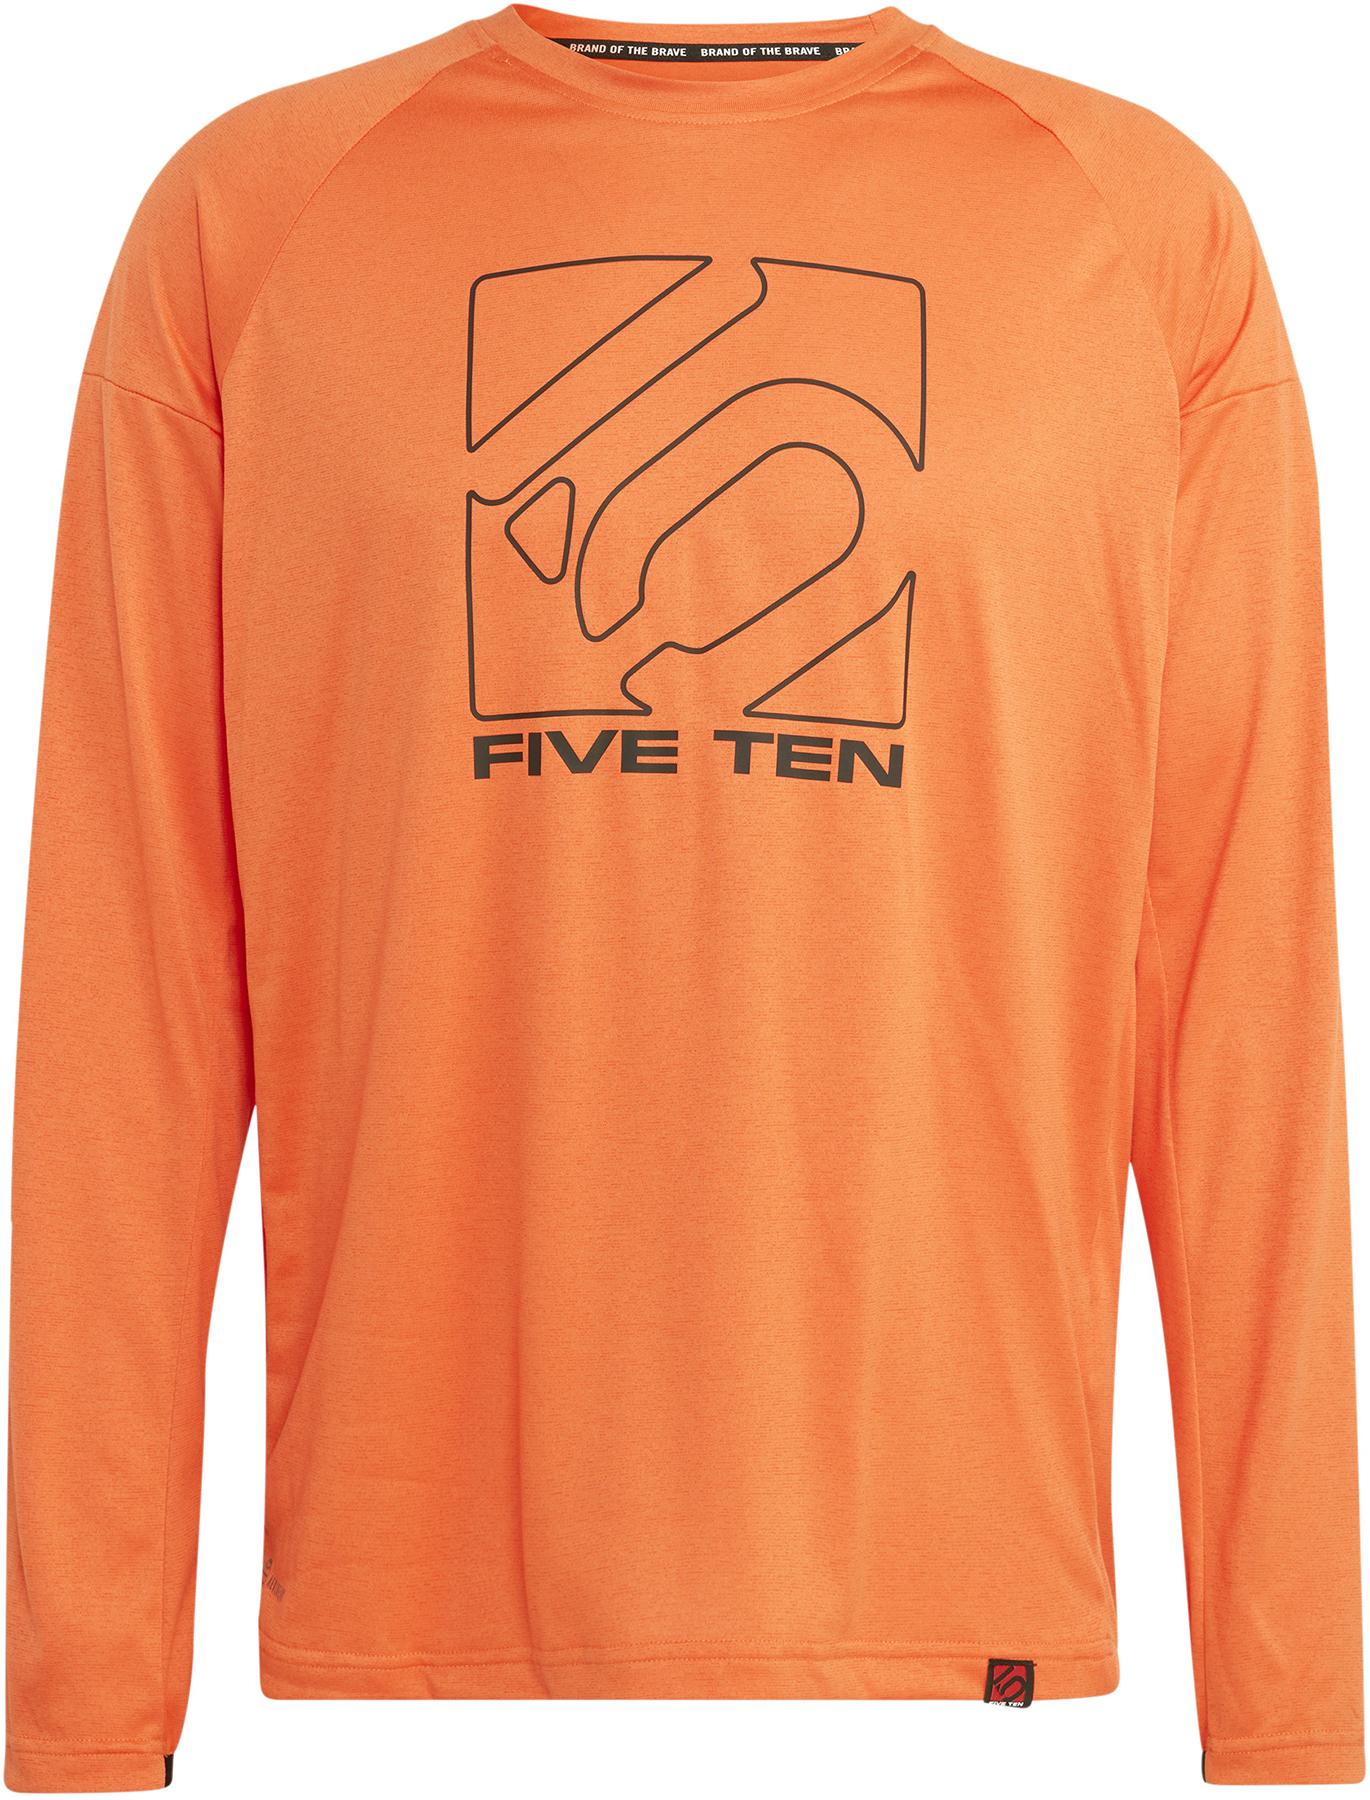 Five Ten Long Sleeve Jersey  Semi Impact Orange